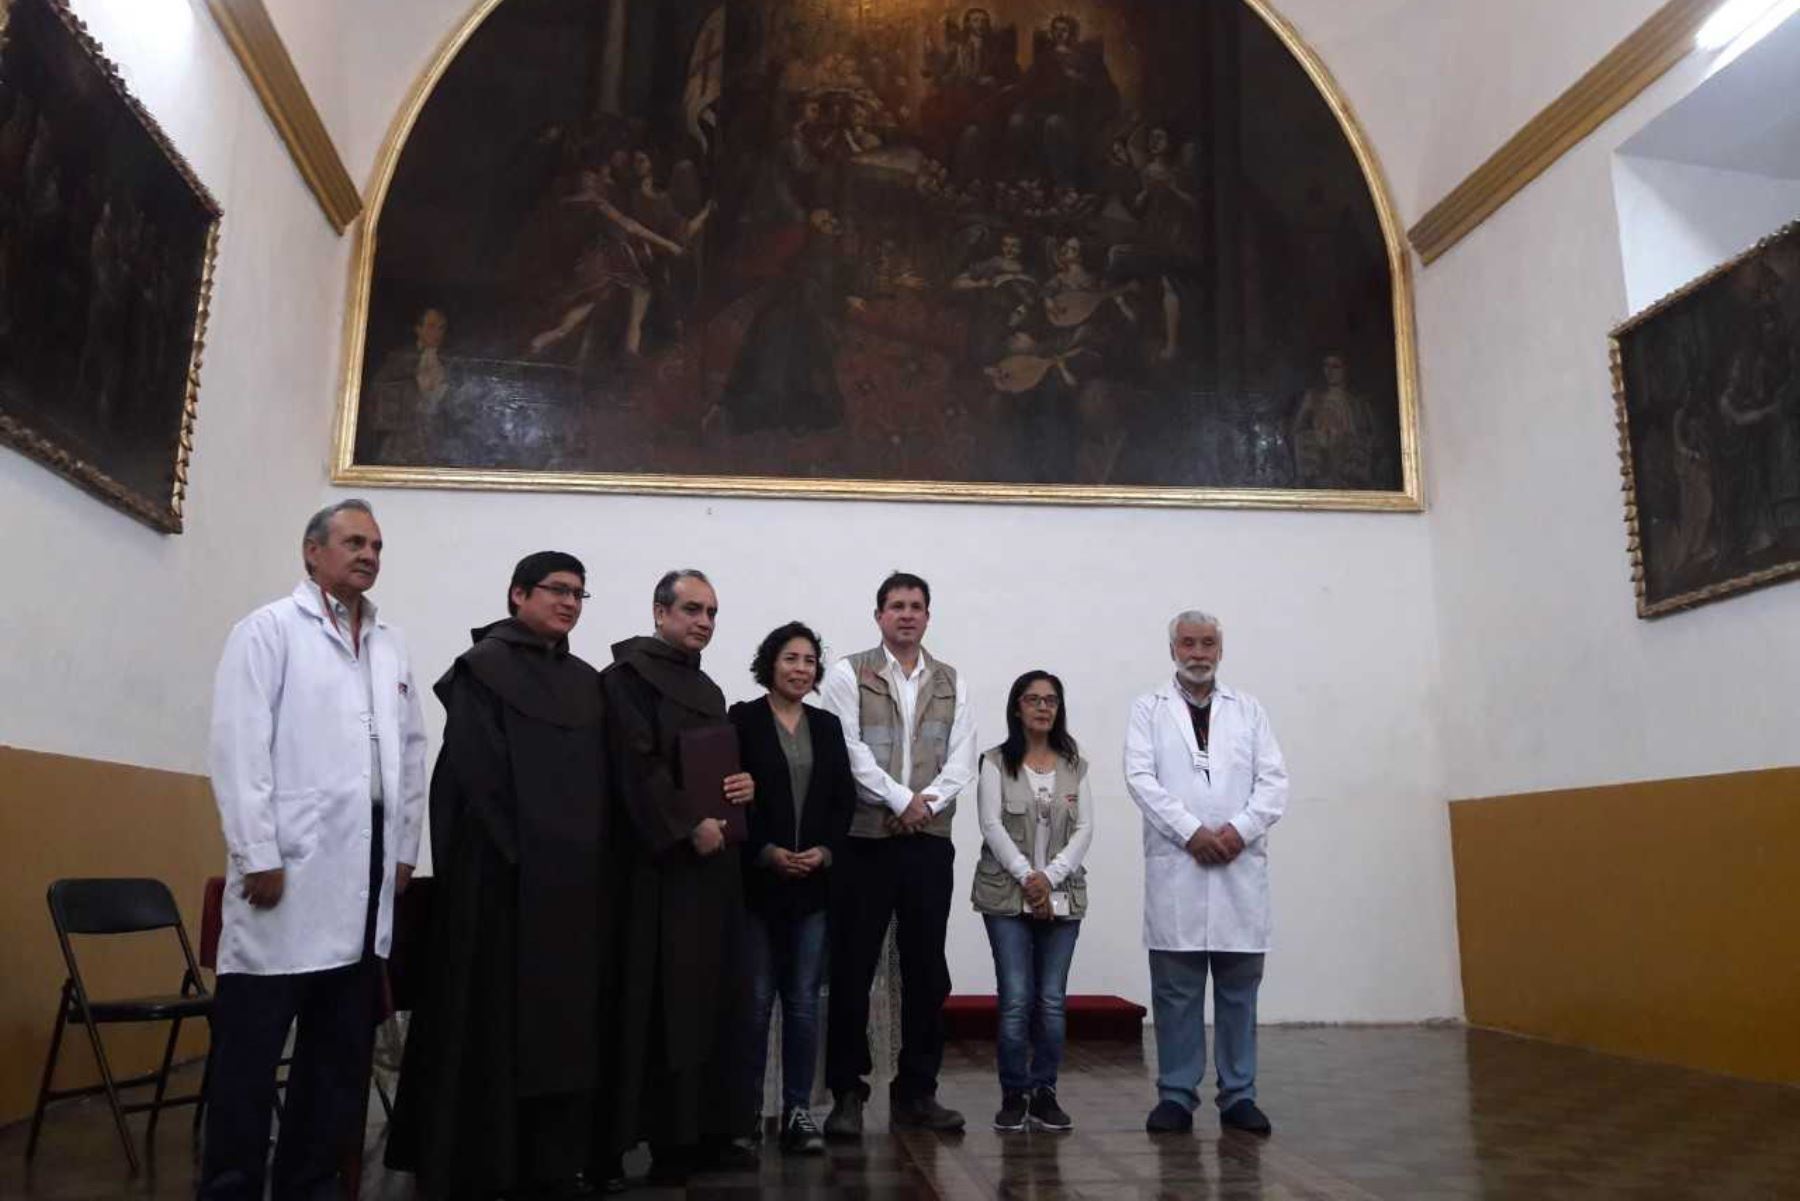 Ministra de Cultura, Patricia Balbuena, entrega a sacerdotes de la Iglesia San Francisco, en Trujillo, un lienzo restaurado del siglo XVIII, considerado el  más grande del norte peruano. Foto: Luis Puell.